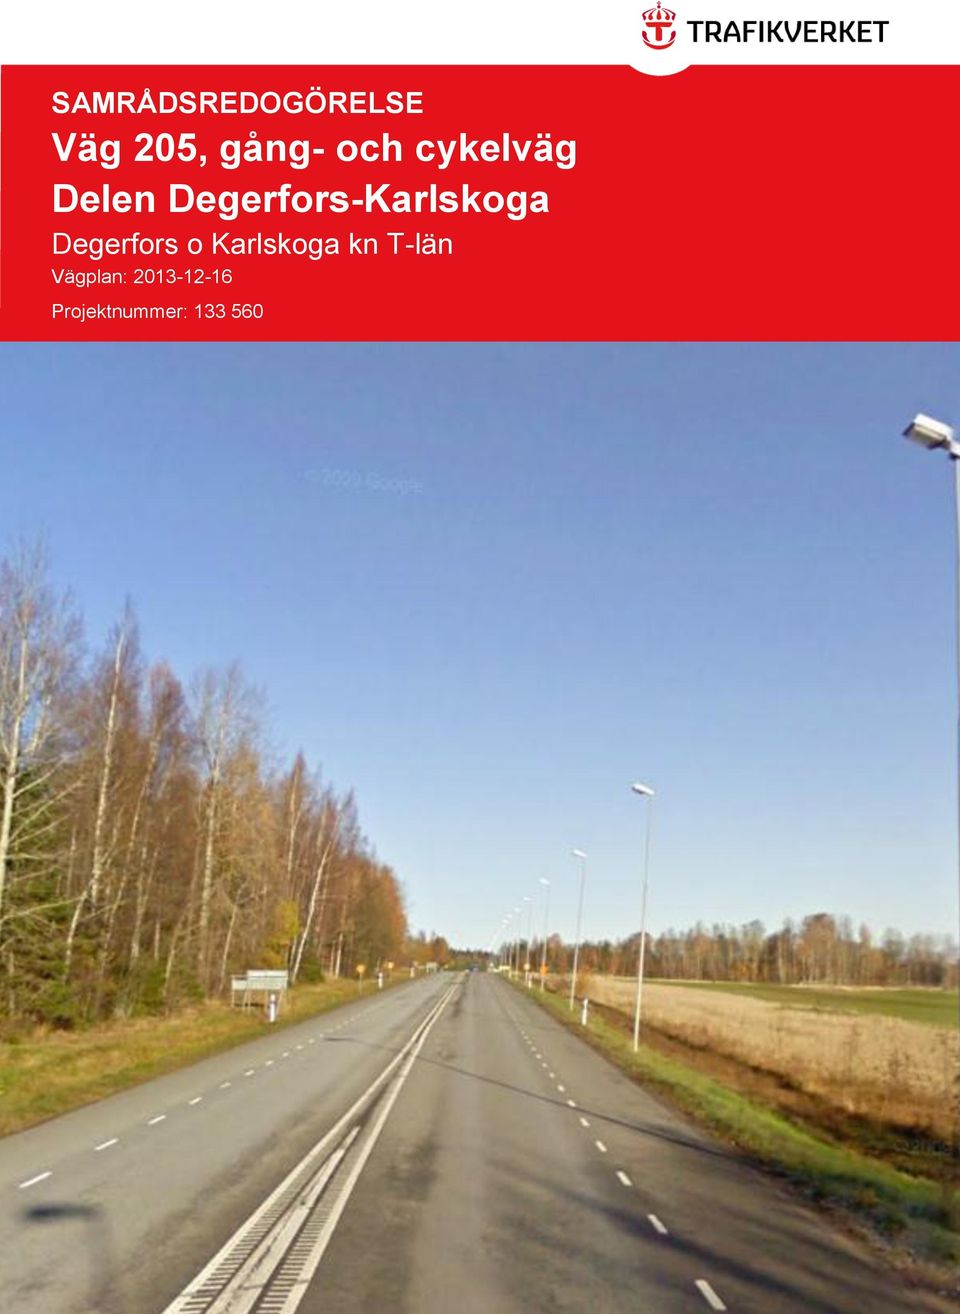 Degerfors-Karlskoga Degerfors o